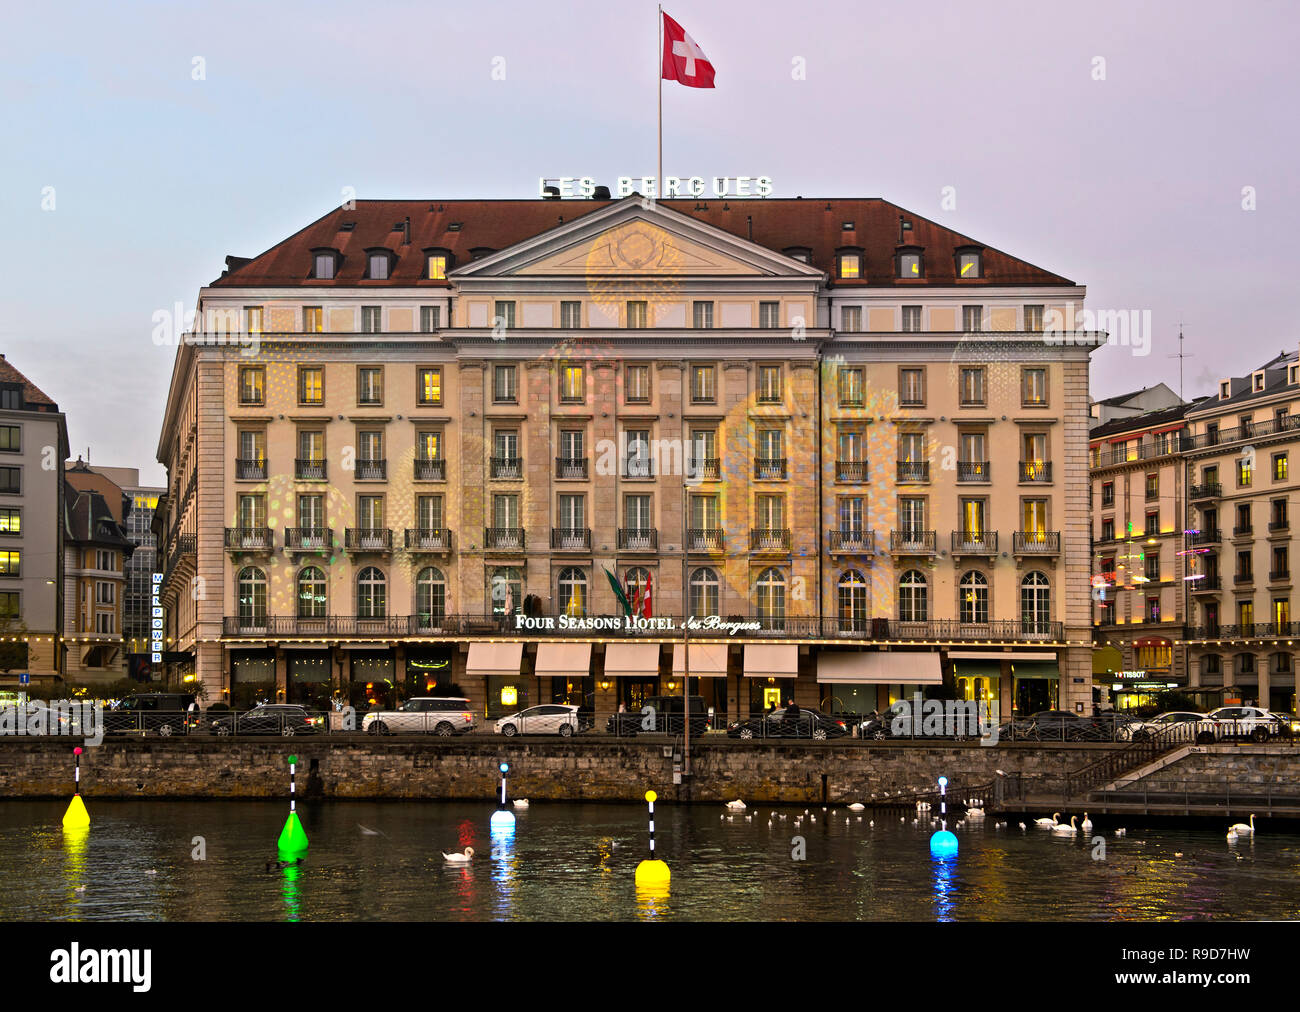 Lux Genève Festival, création Les Flotteuses par Stéphane Durand en avant de l'allumé le FOUR SEASONS HOTEL DES BERGUES, Genève, Suisse Banque D'Images